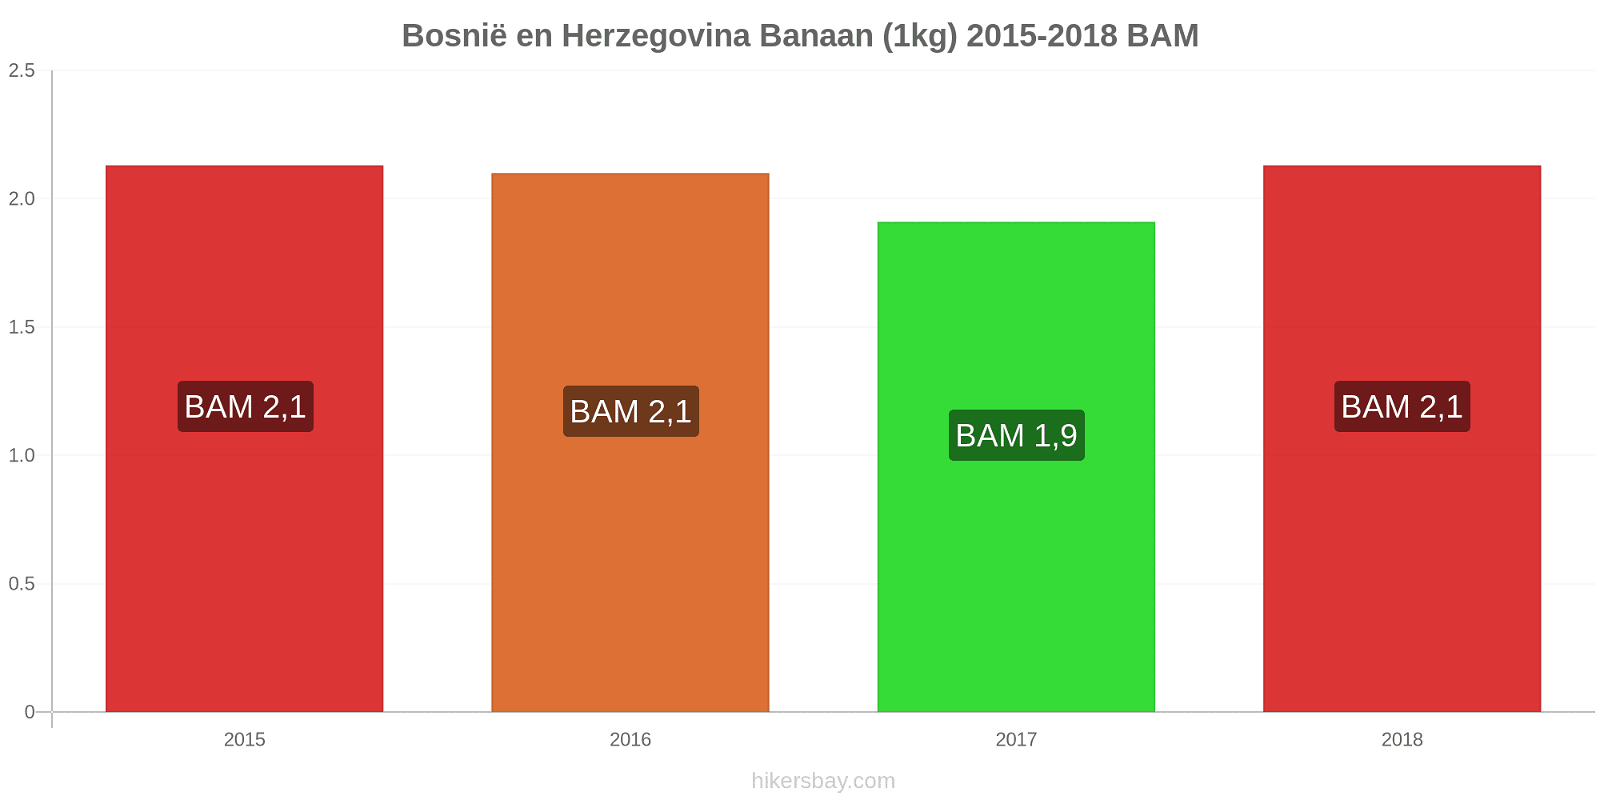 Bosnië en Herzegovina prijswijzigingen Bananen (1kg) hikersbay.com